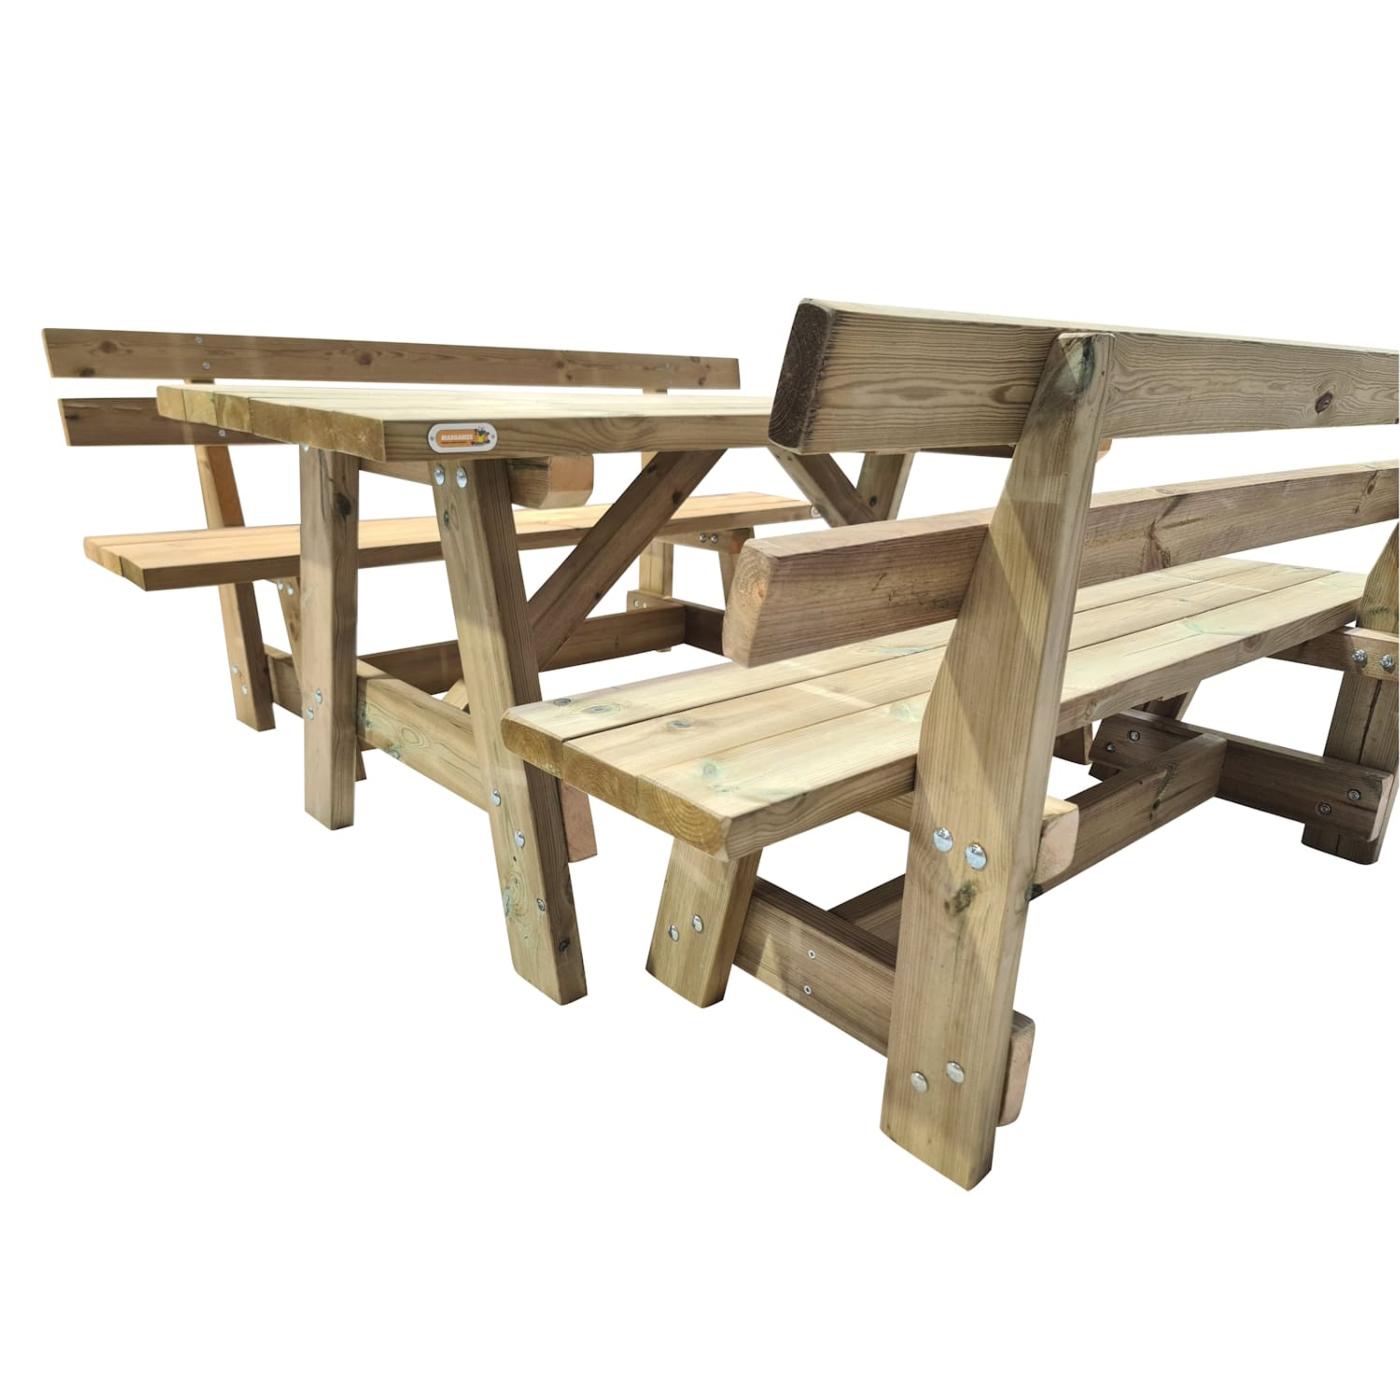 Mesa de exterior em madeira ZURICH com bancos com encosto VIC MASGAMES